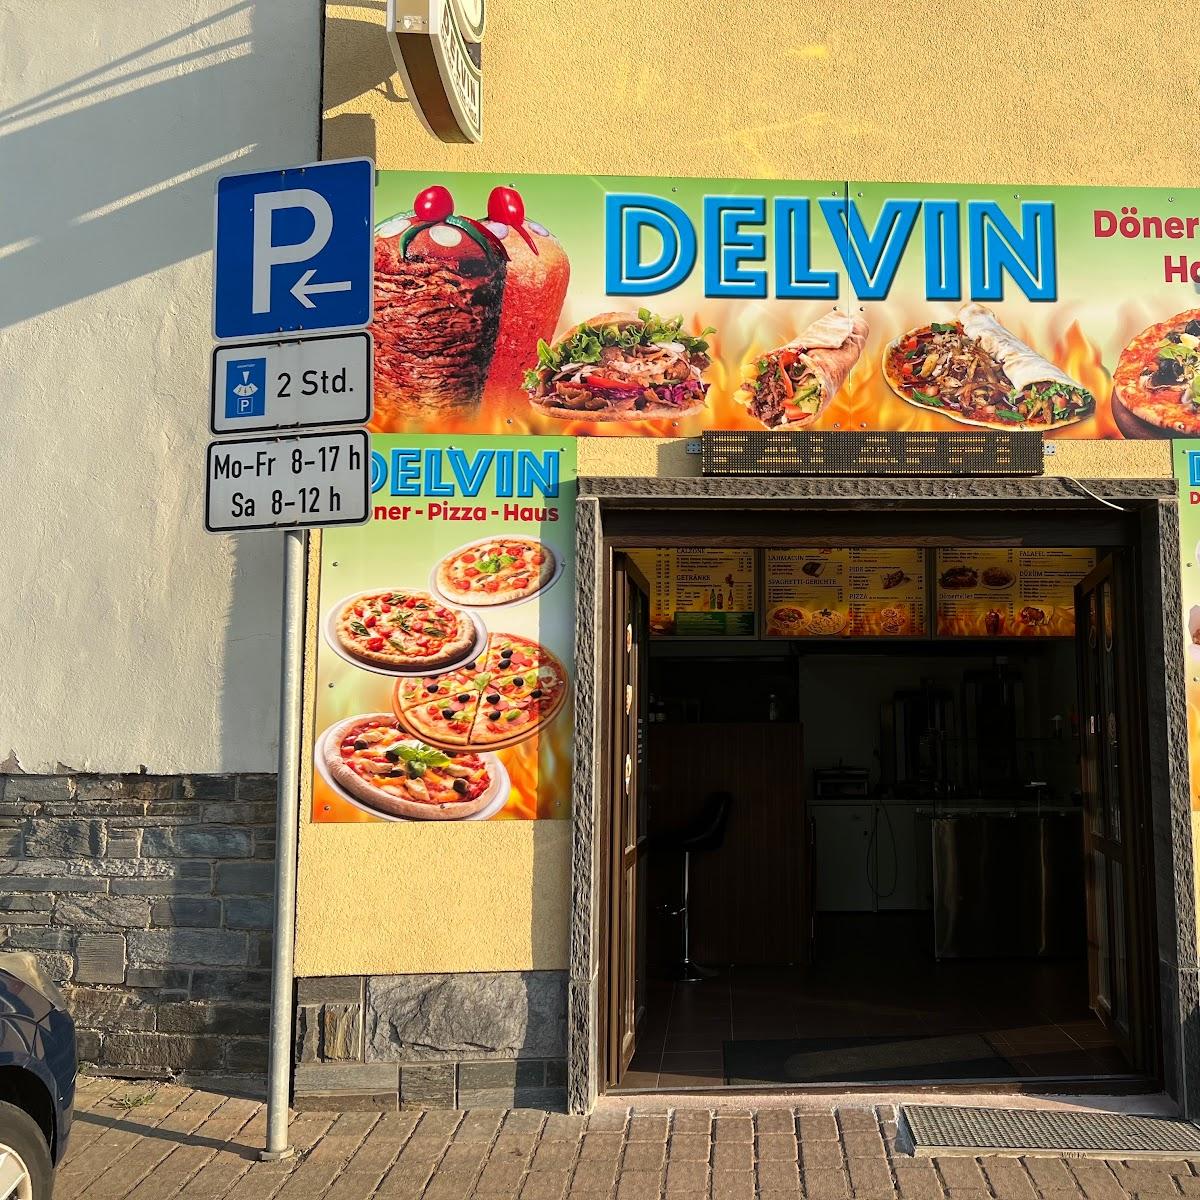 Restaurant "DELVIN Döner-Pizza-Haus" in Plauen